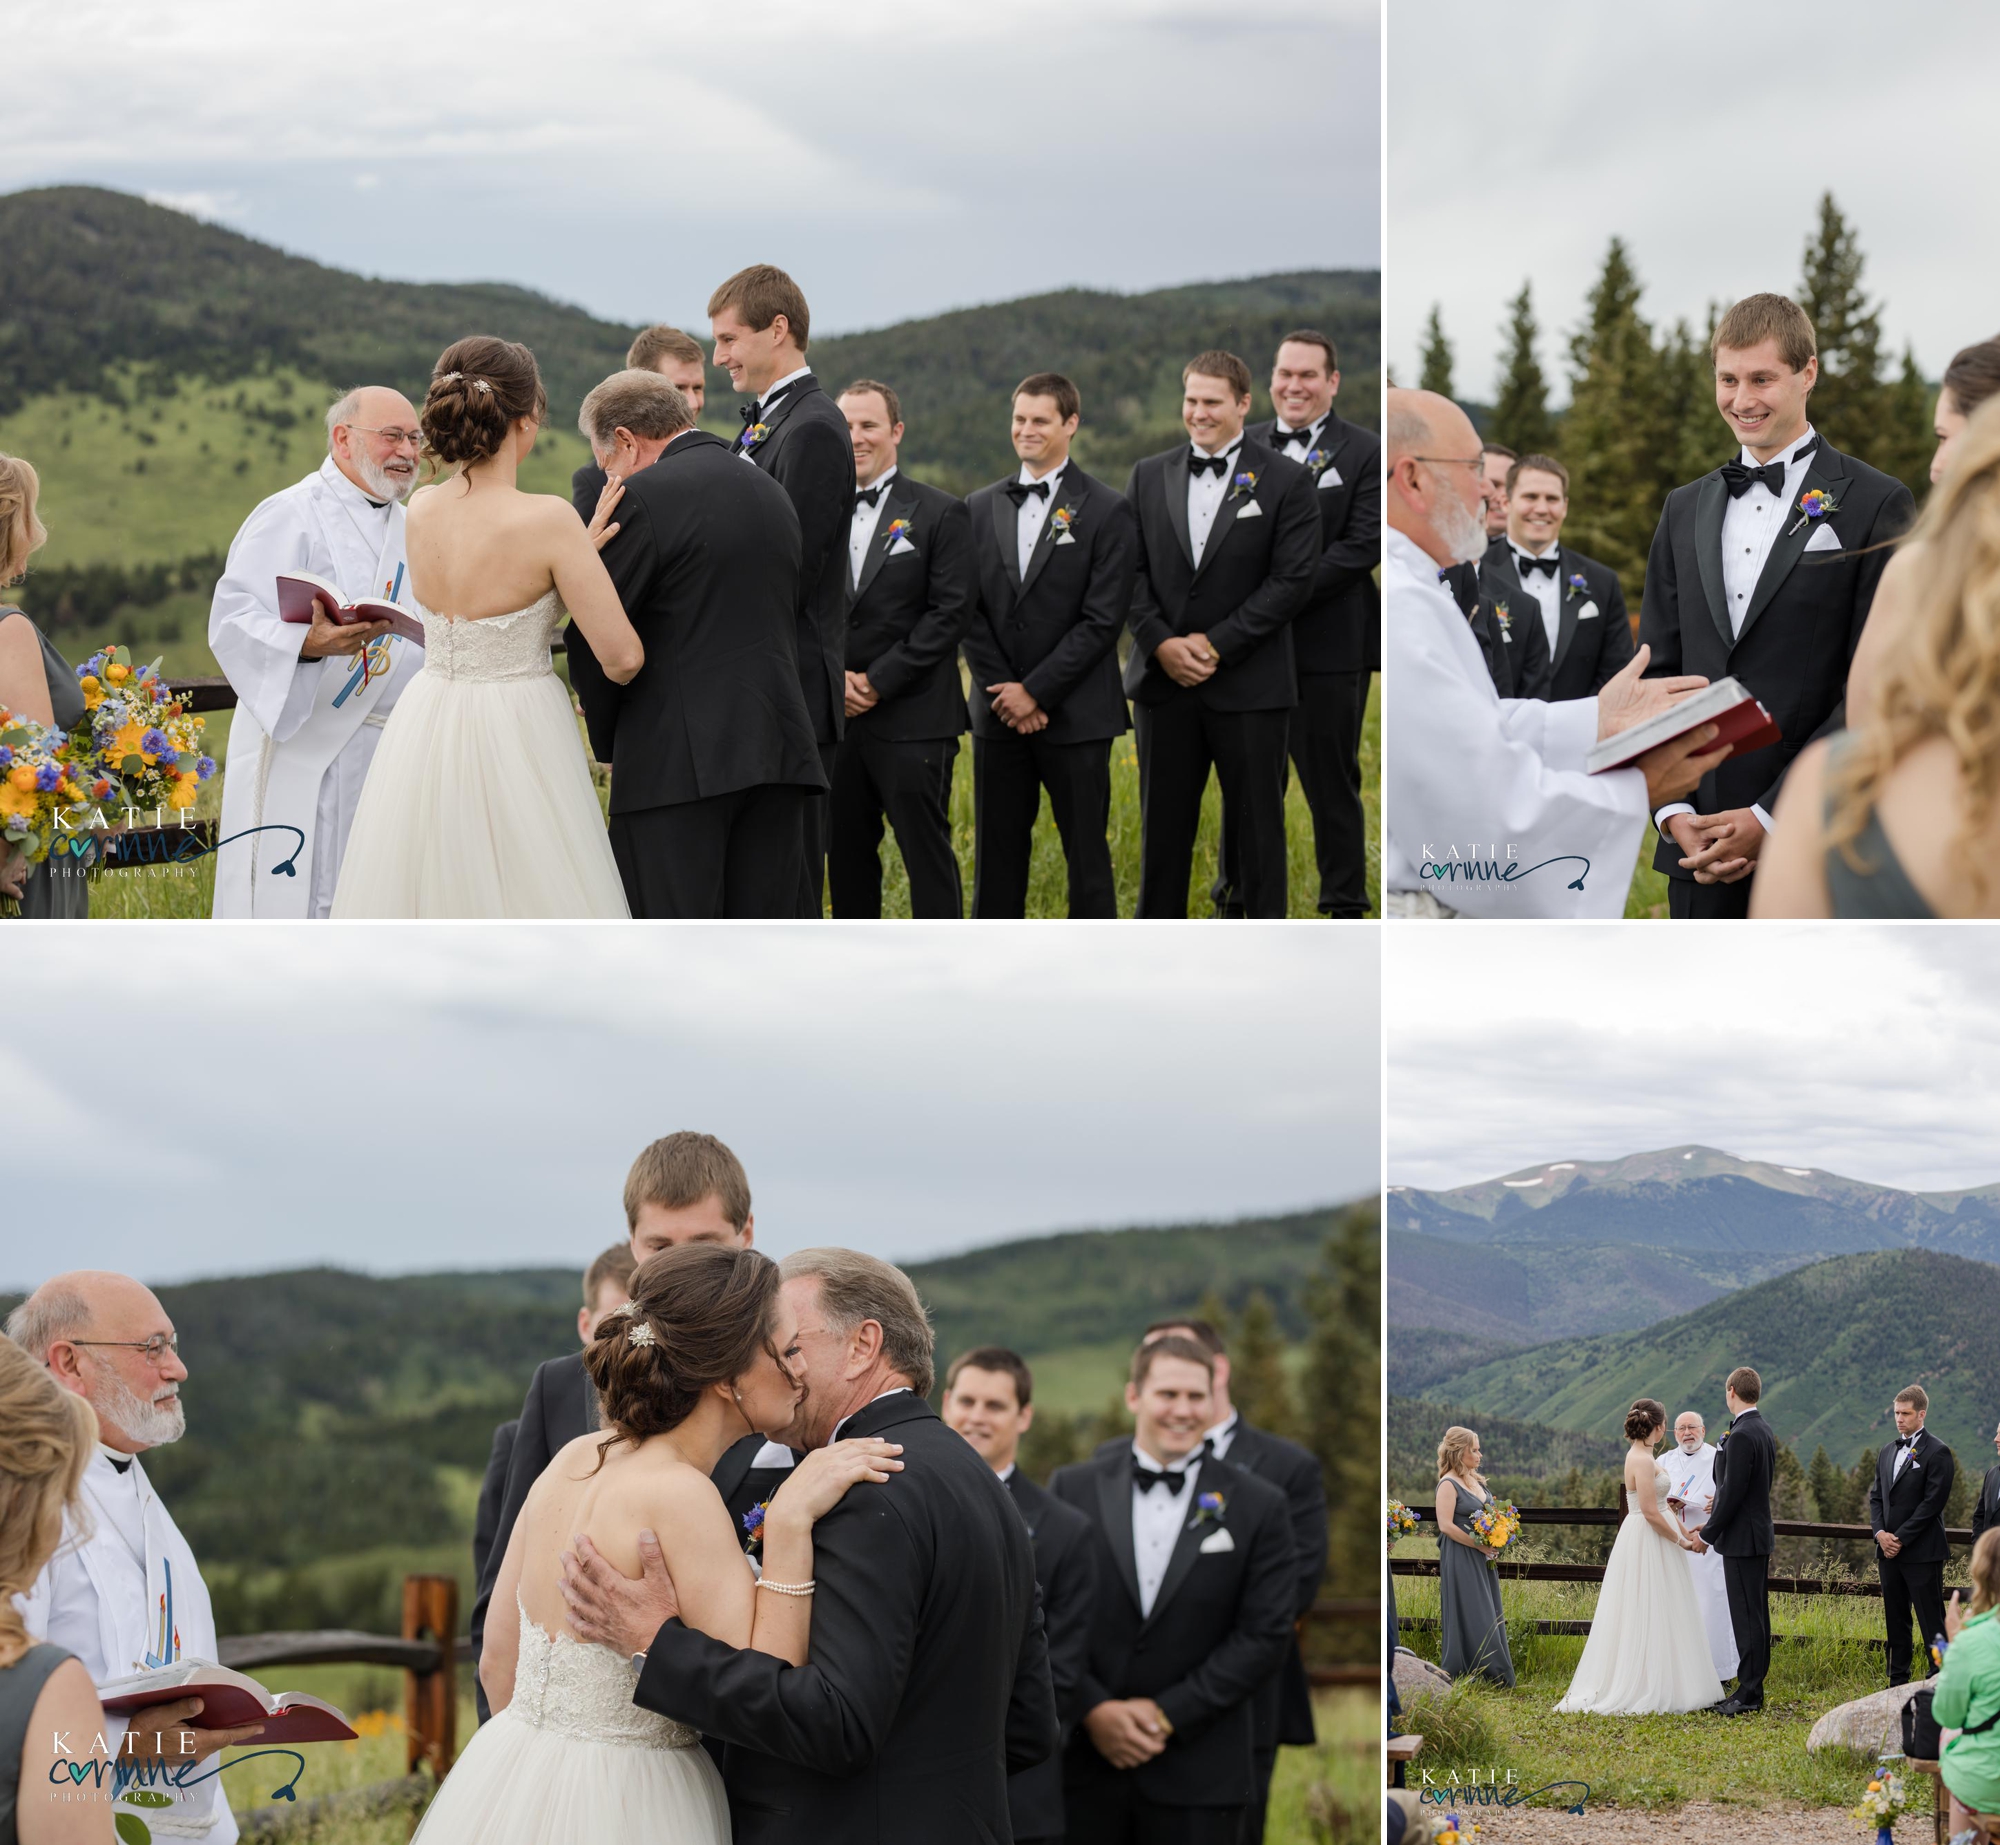 Wedding locations in Colorado